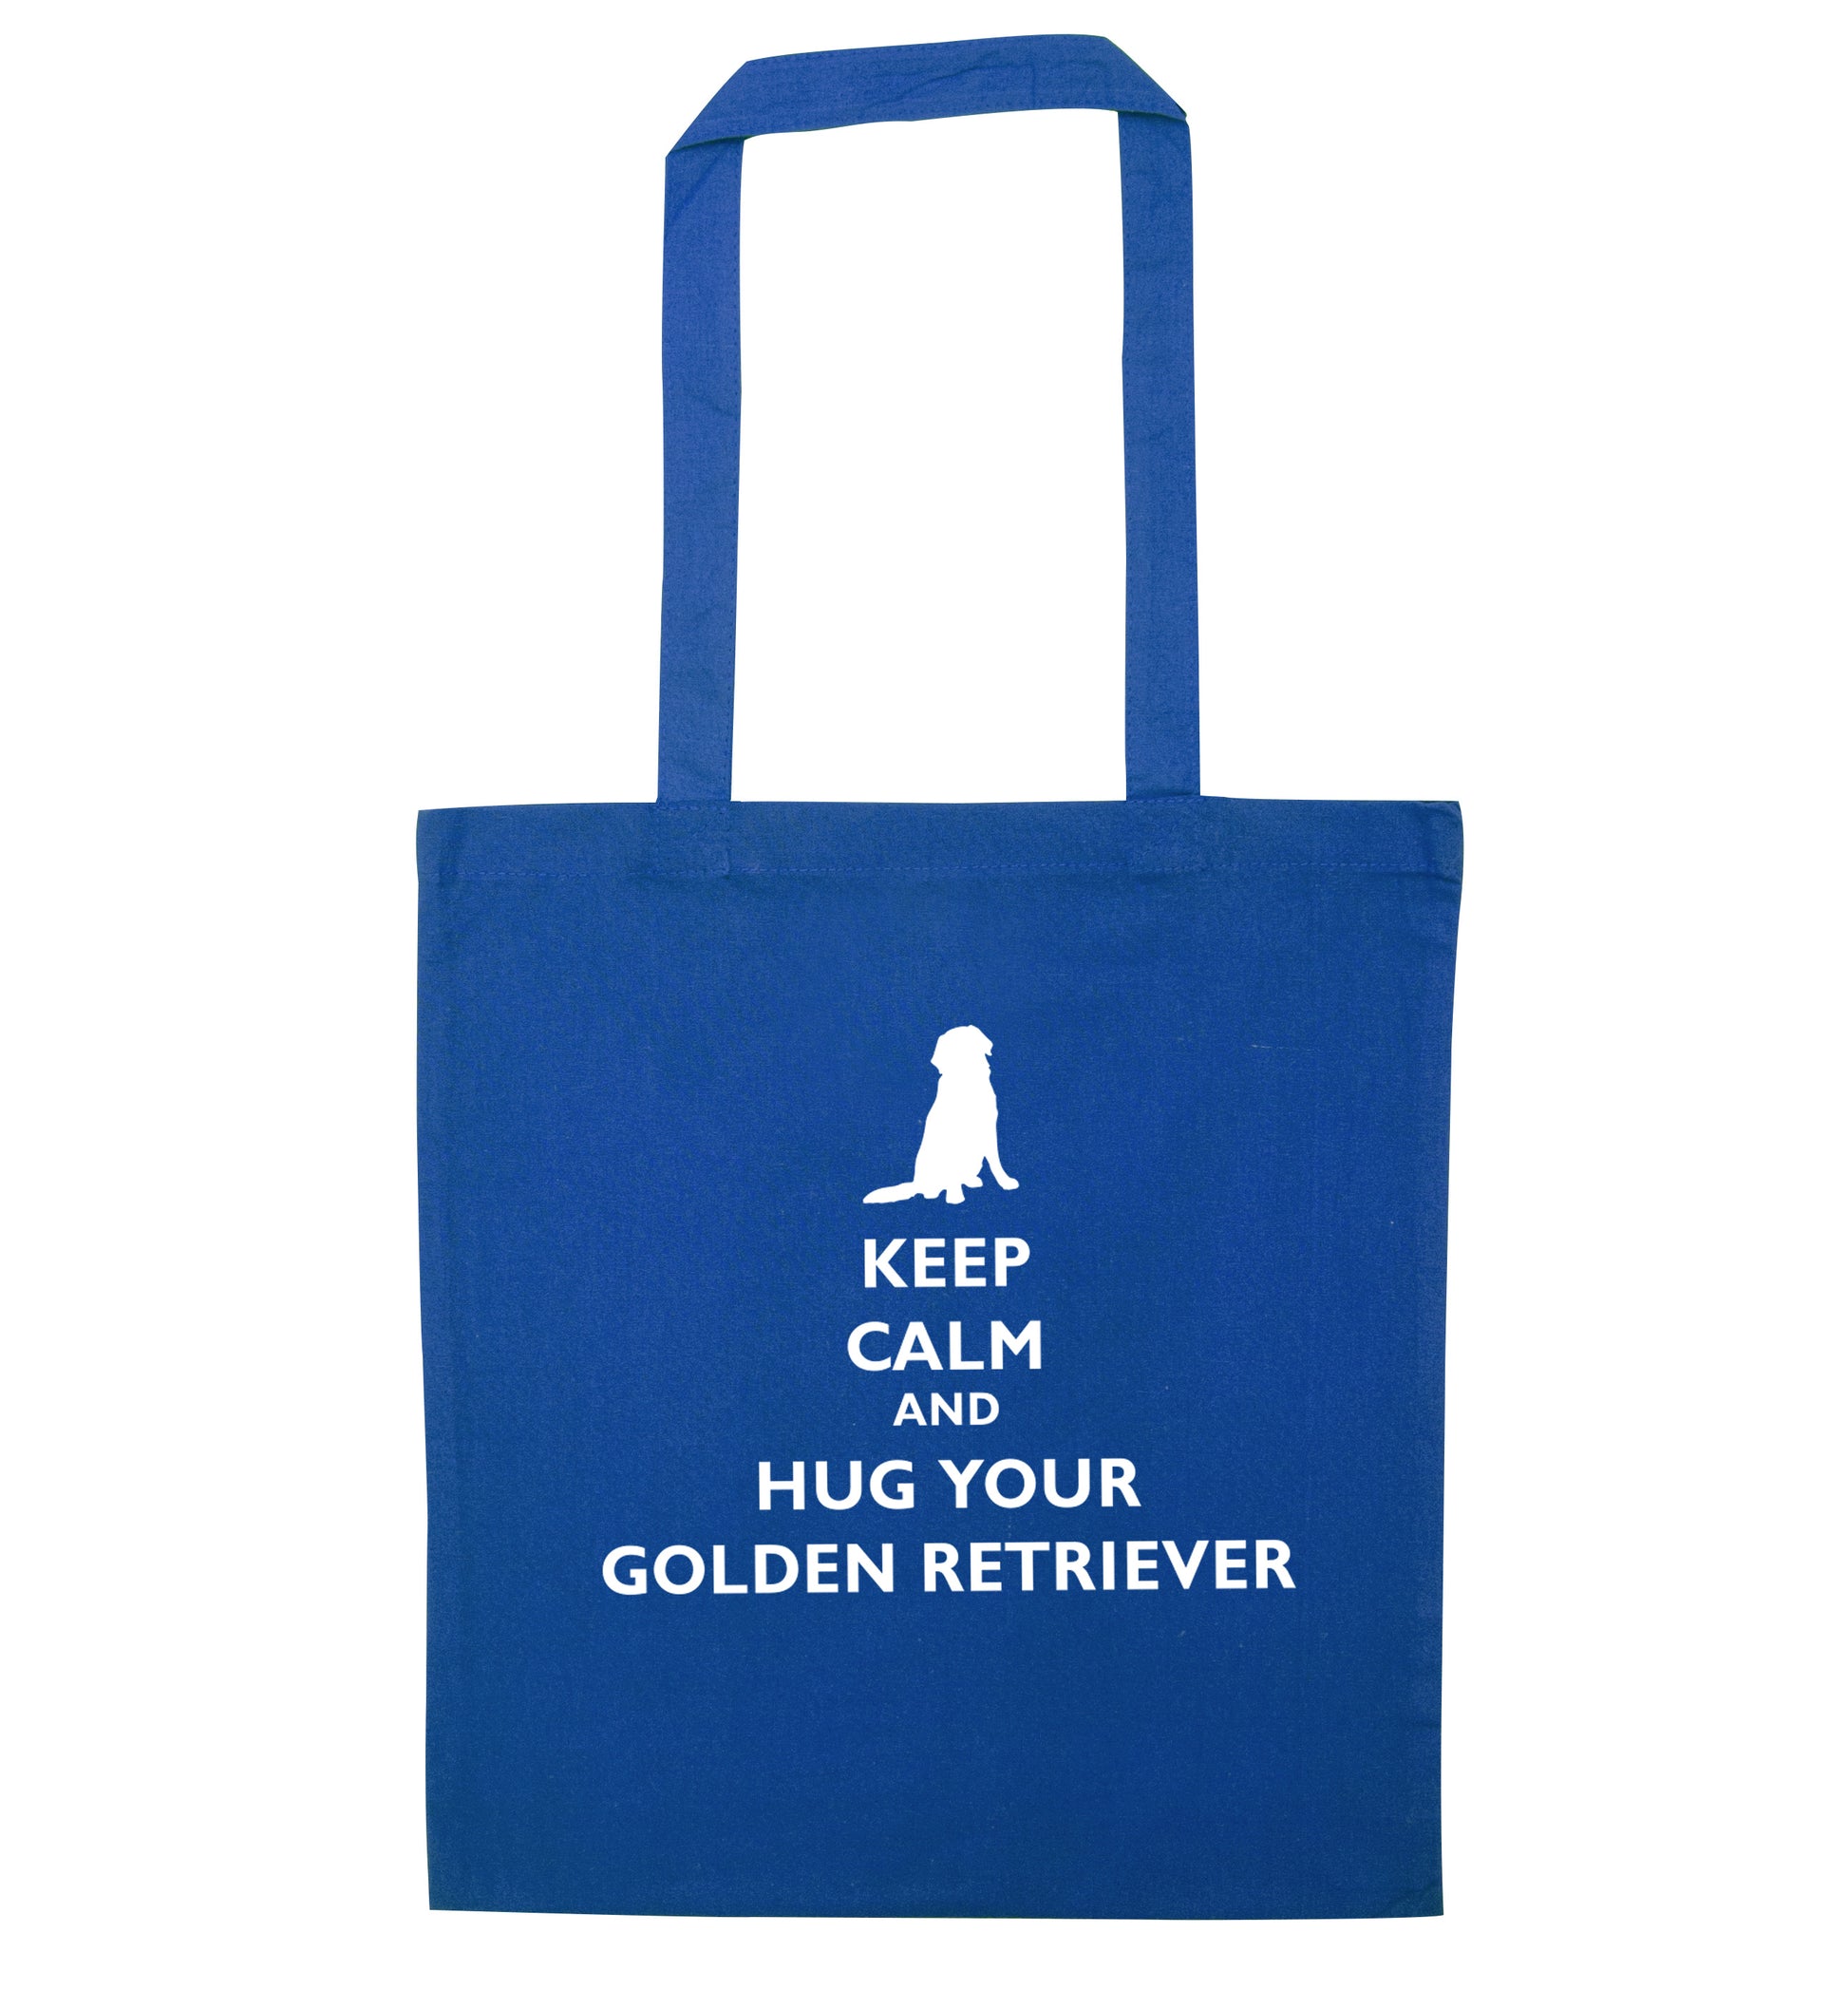 Keep calm and hug your golden retriever blue tote bag